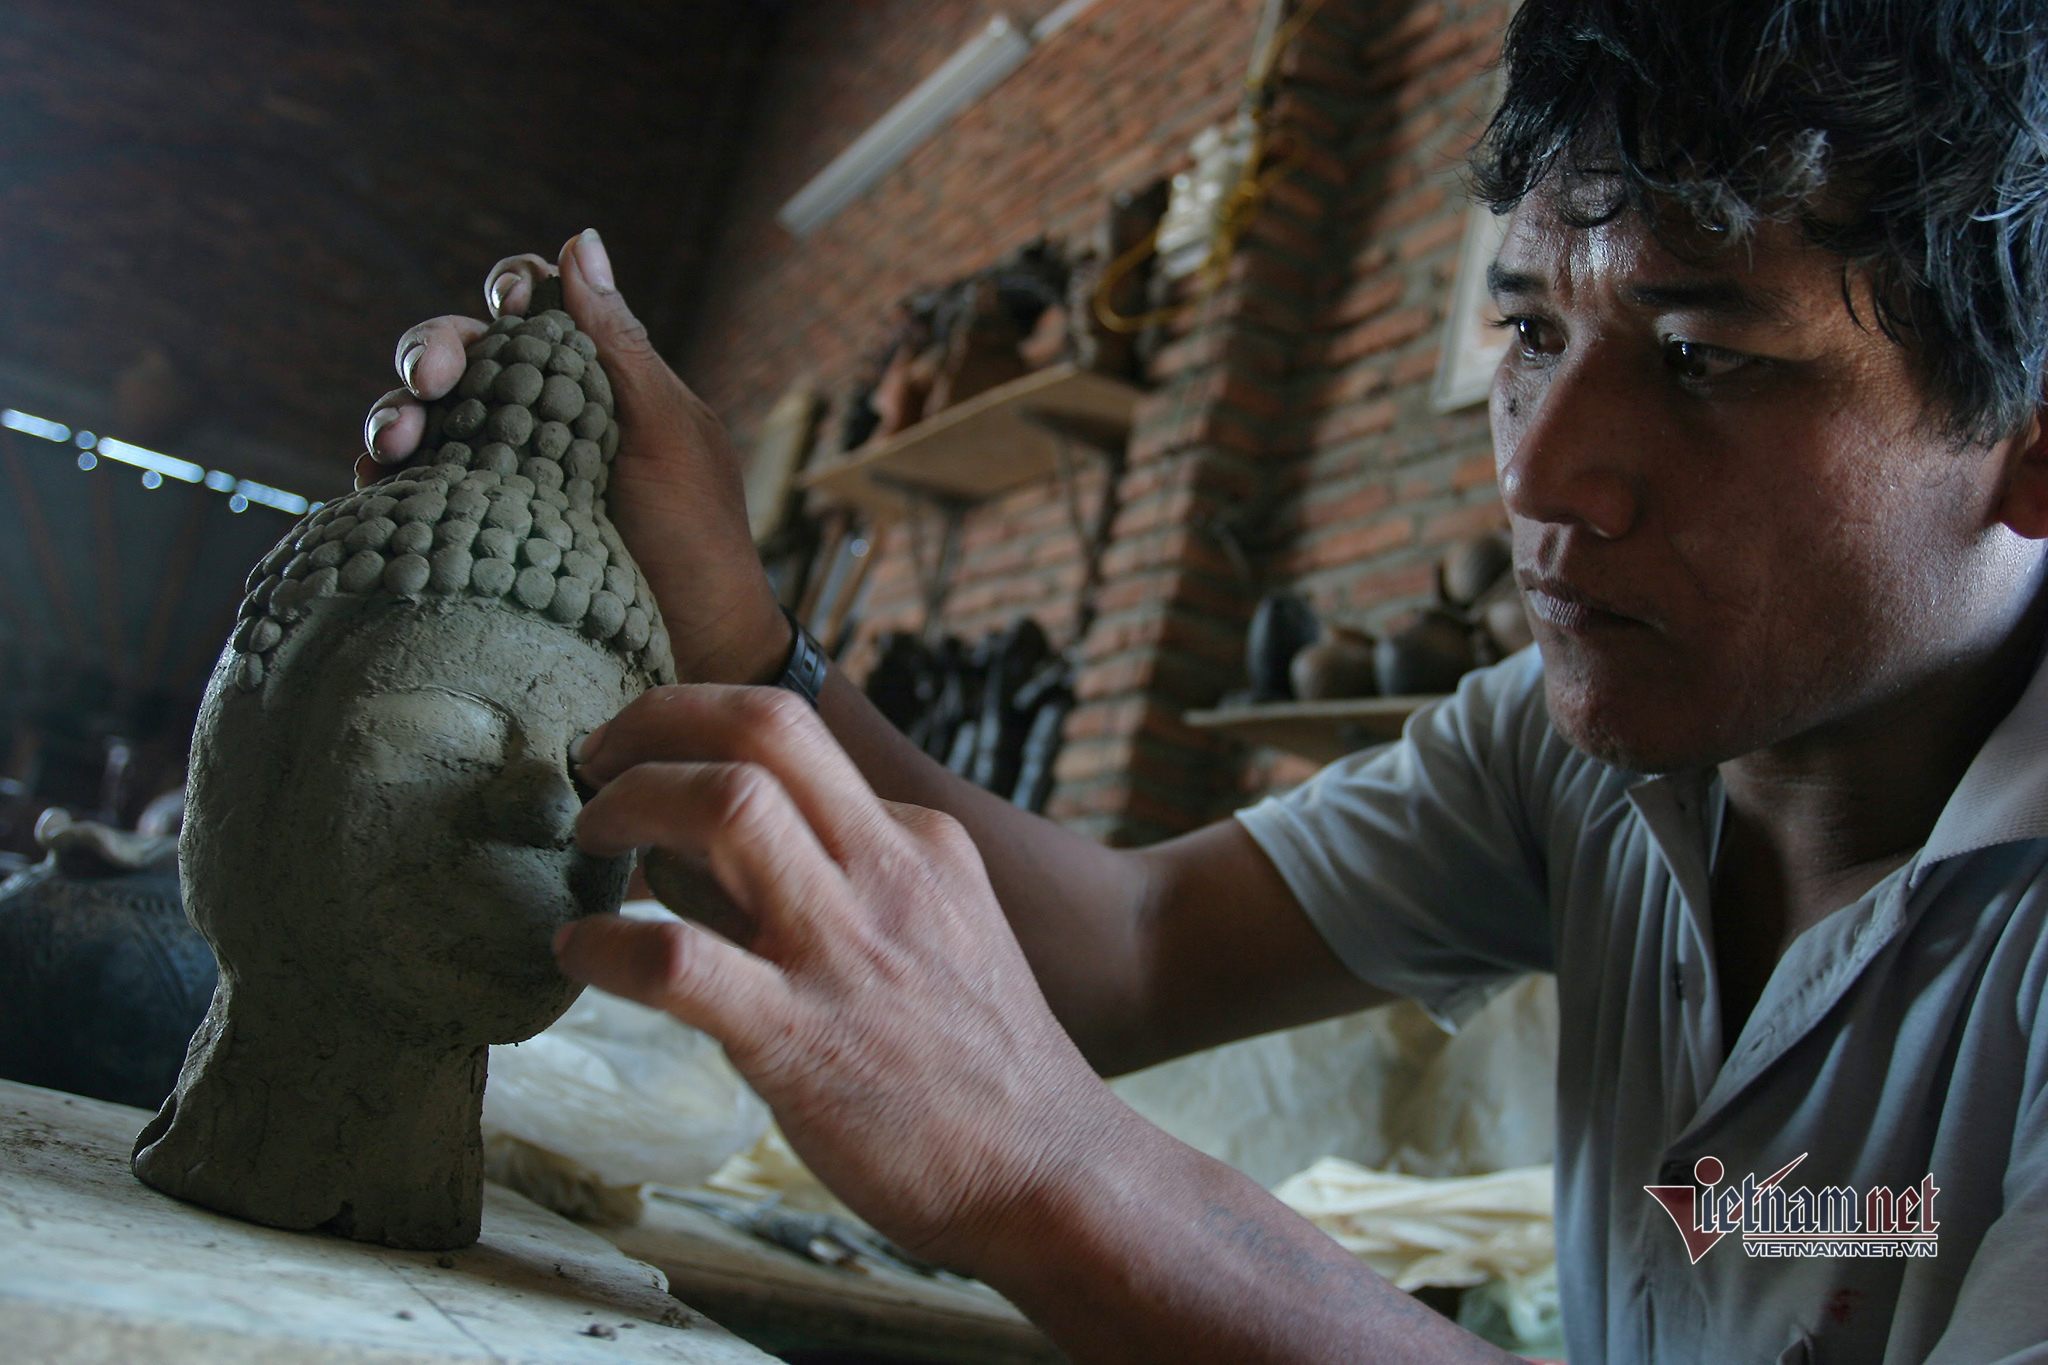 Bàu Trúc - Một trong những làng nghề gốm cổ xưa nhất Đông Nam Á